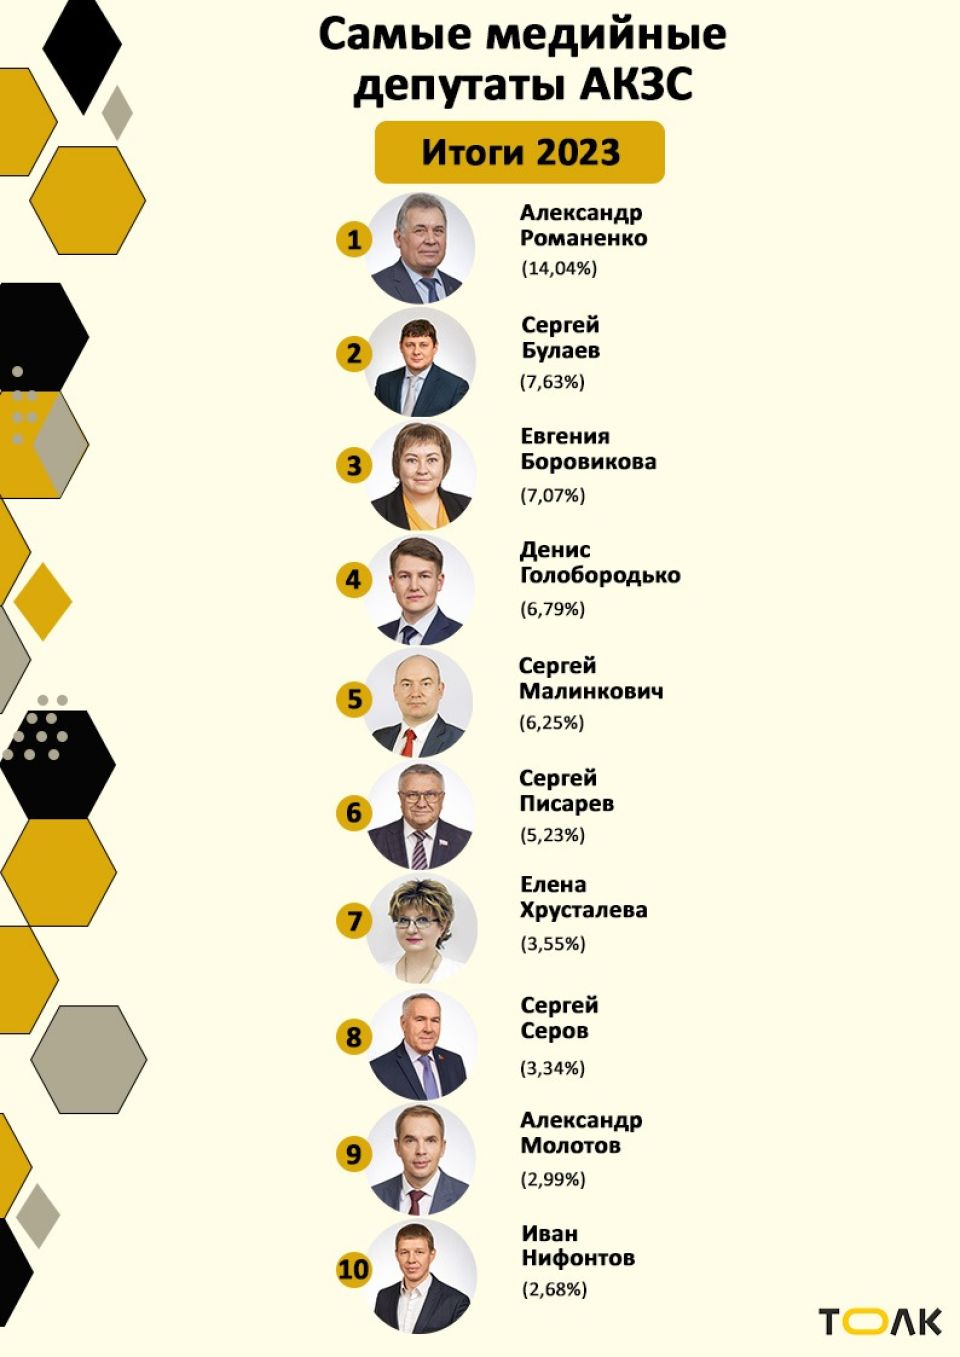 Рейтинг медийности депутатов АКЗС. Итоги 2023 года